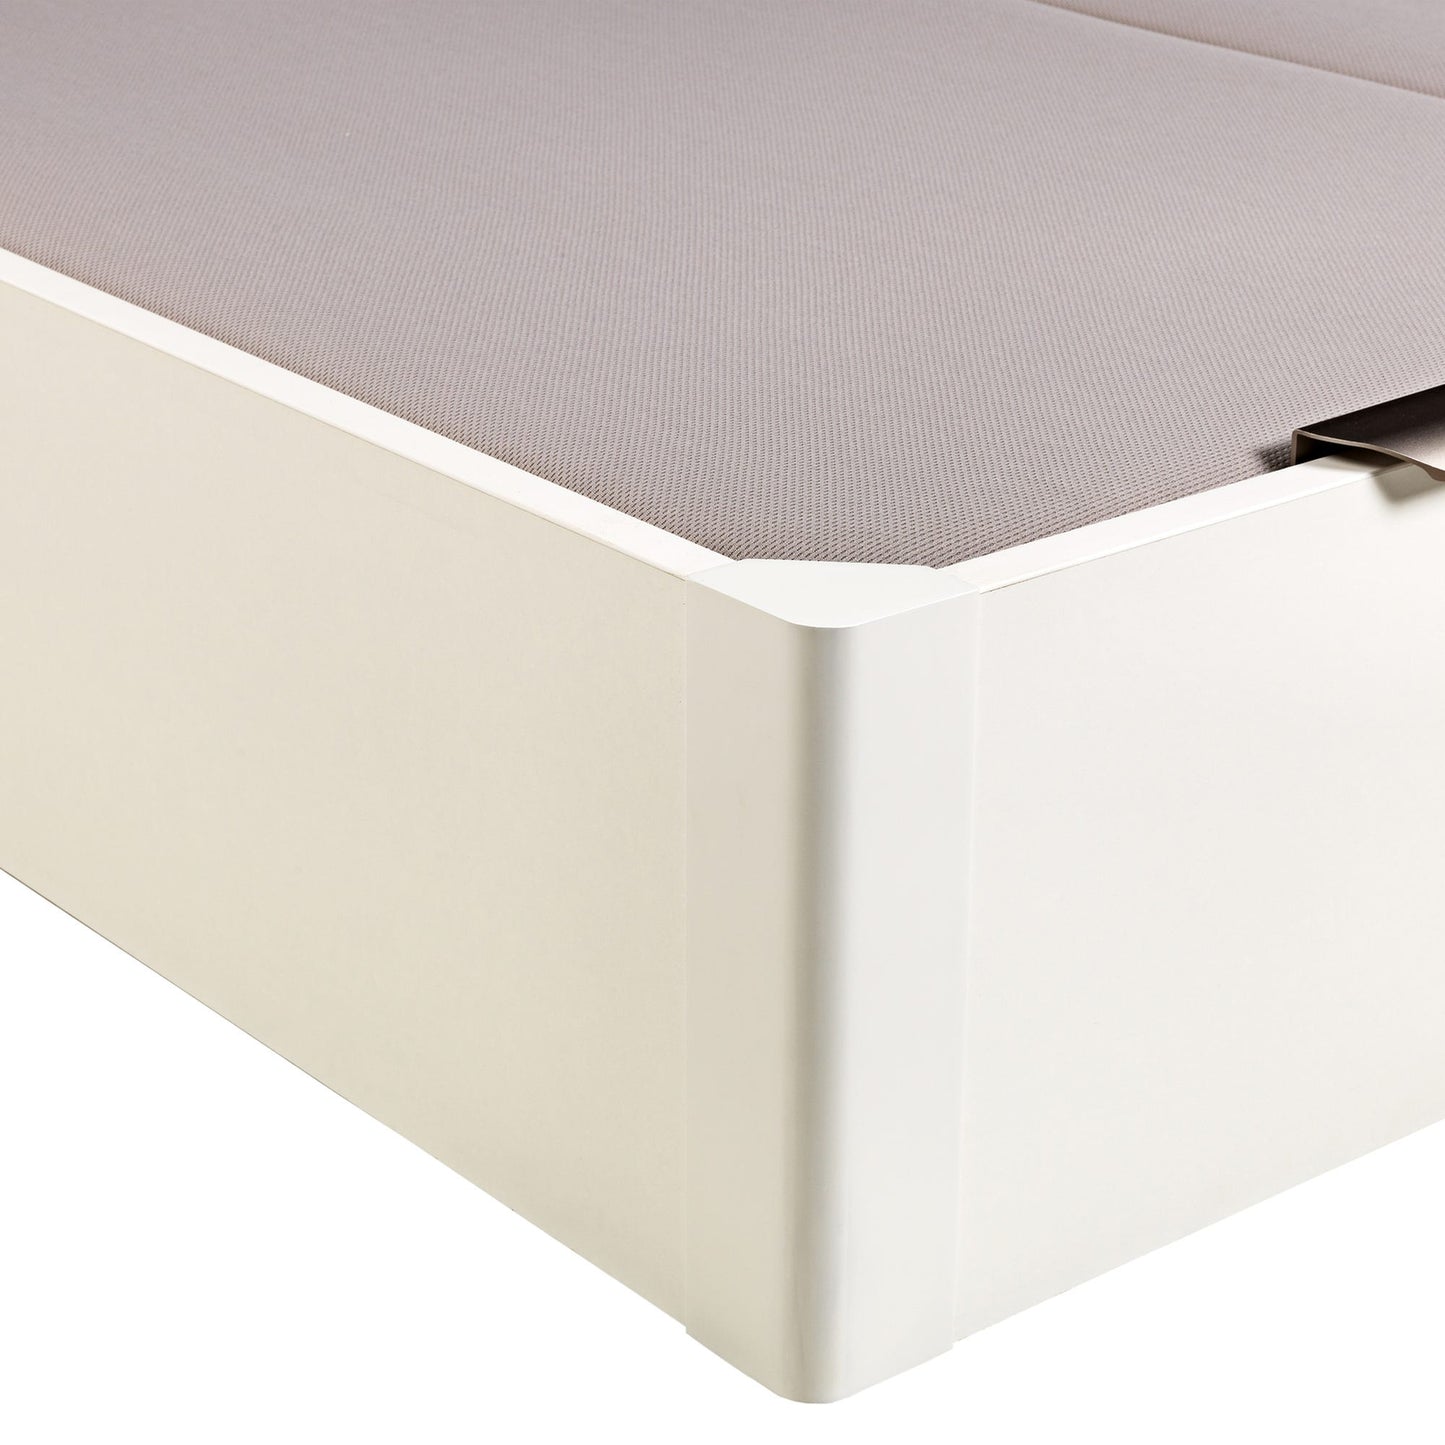 Canapé abatible de madera de tapa doble de color blanco - DESIGN - 160x220